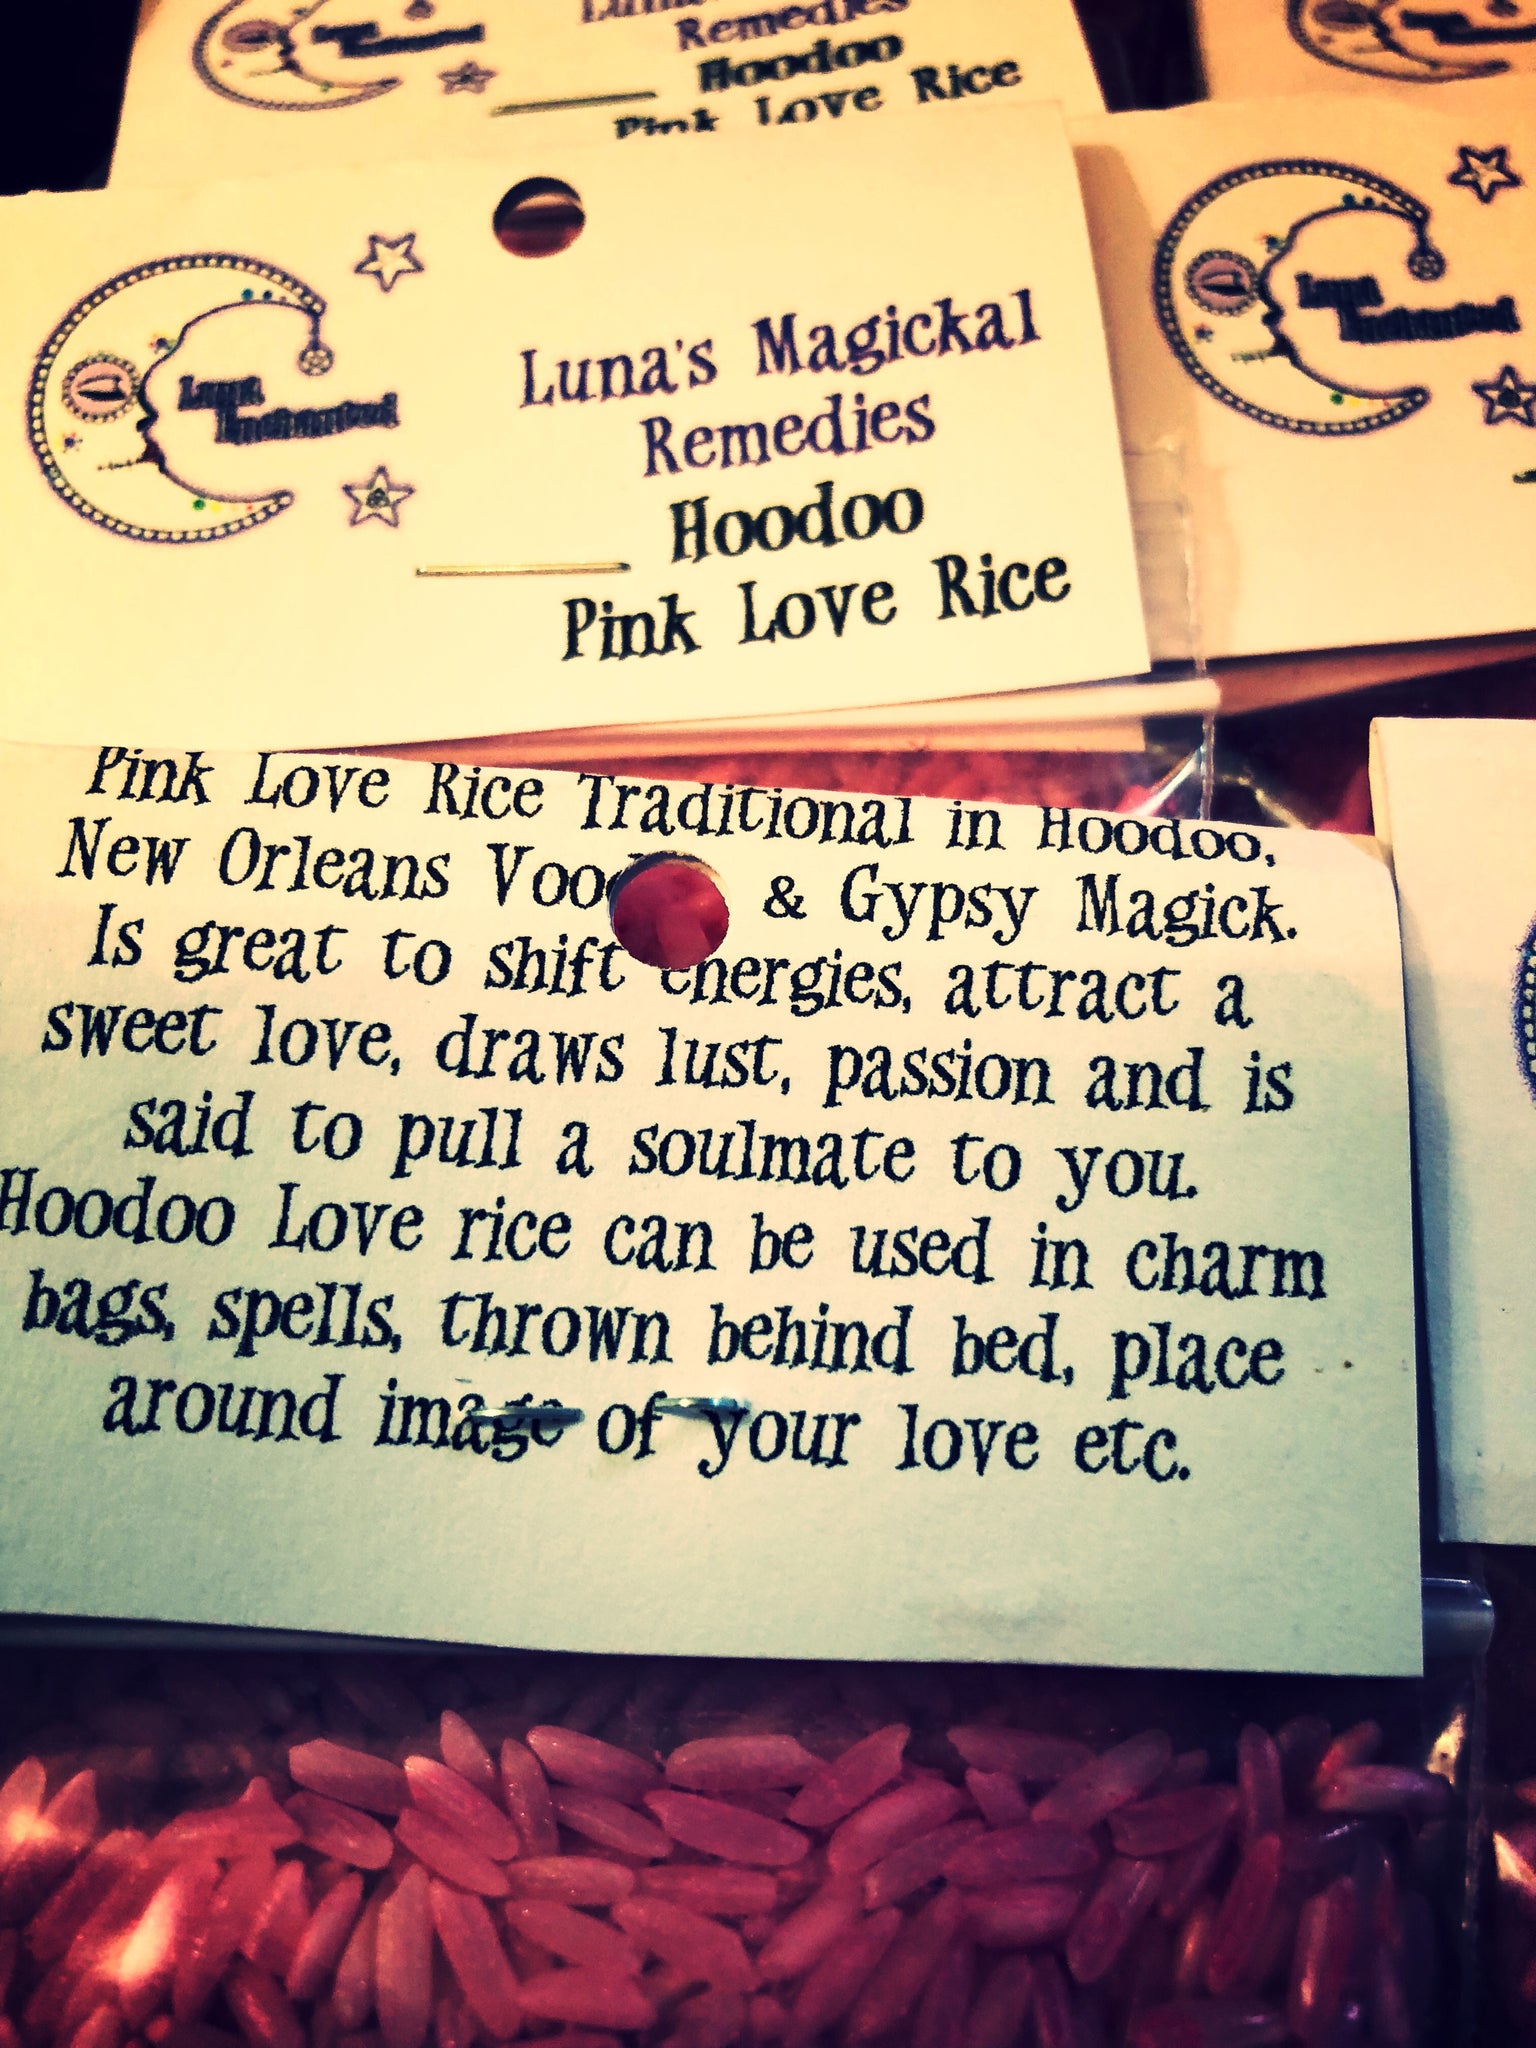 Hoodoo Green Money Rice – Luna Enchanted